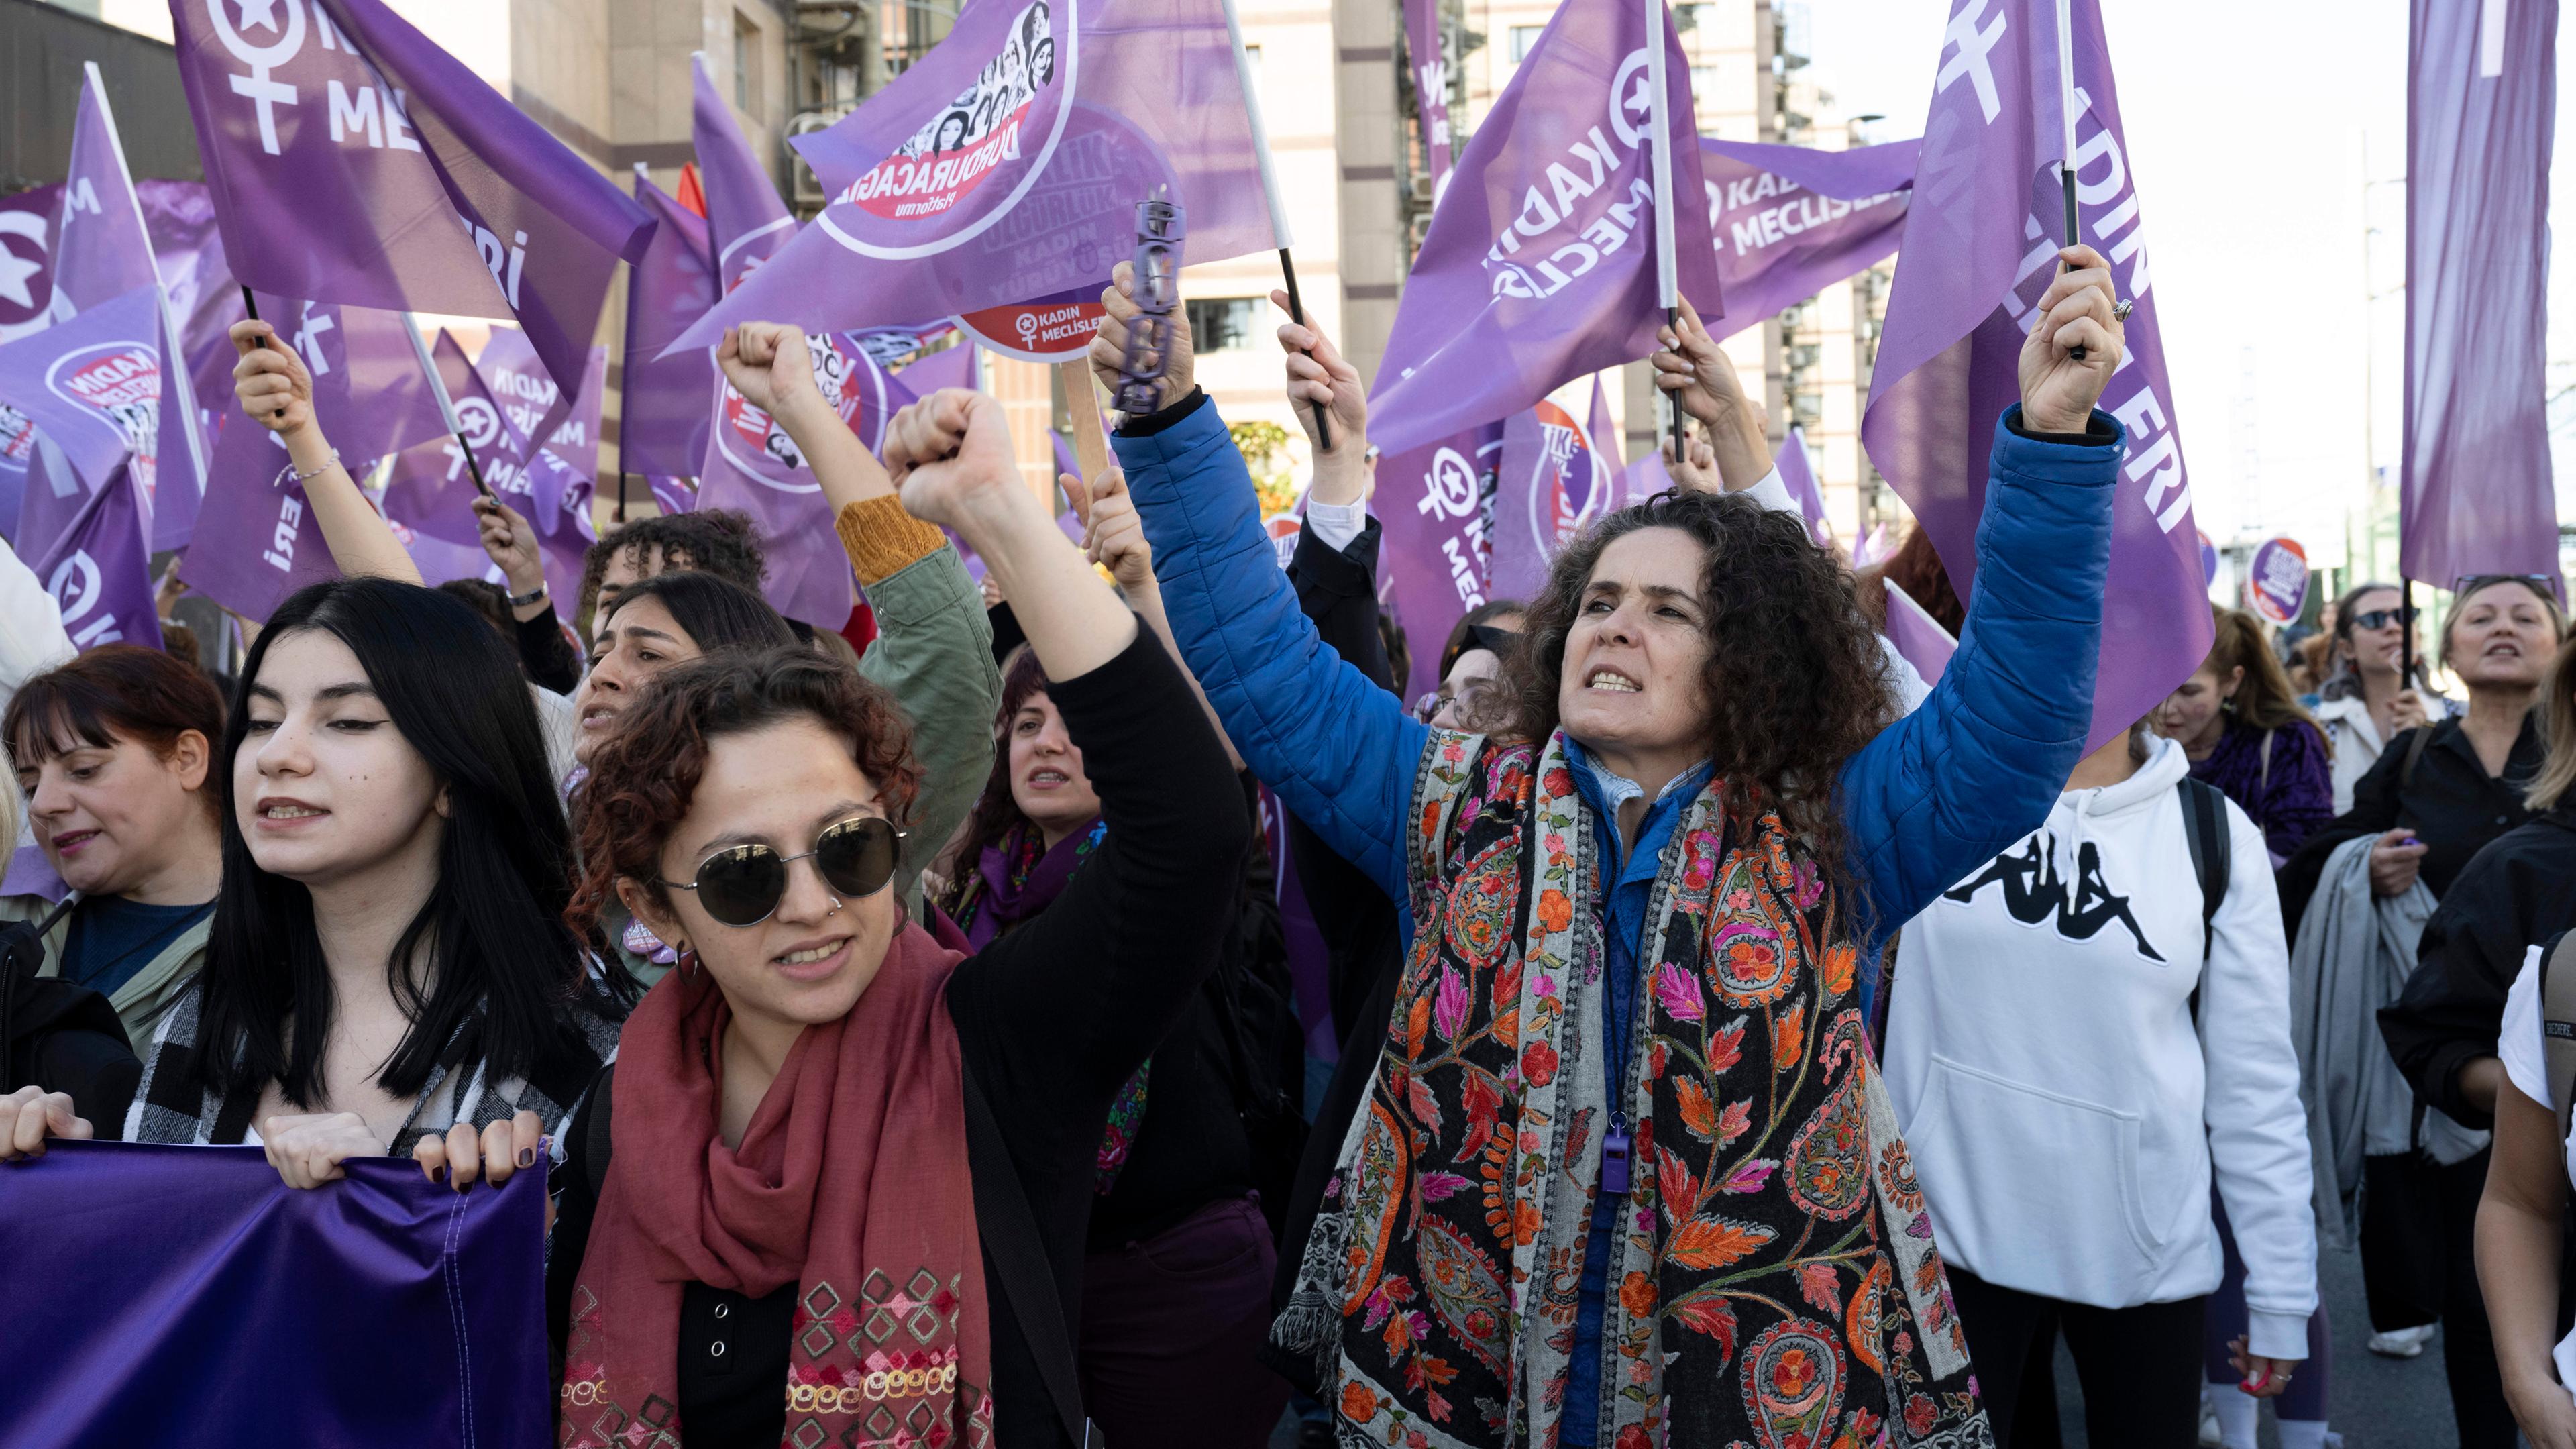  Frauen demonstrieren für Frauenrechte, gegen Femizide, gegen Geschlechterdiskriminierung und die patriarchalische Gesellschaft. 